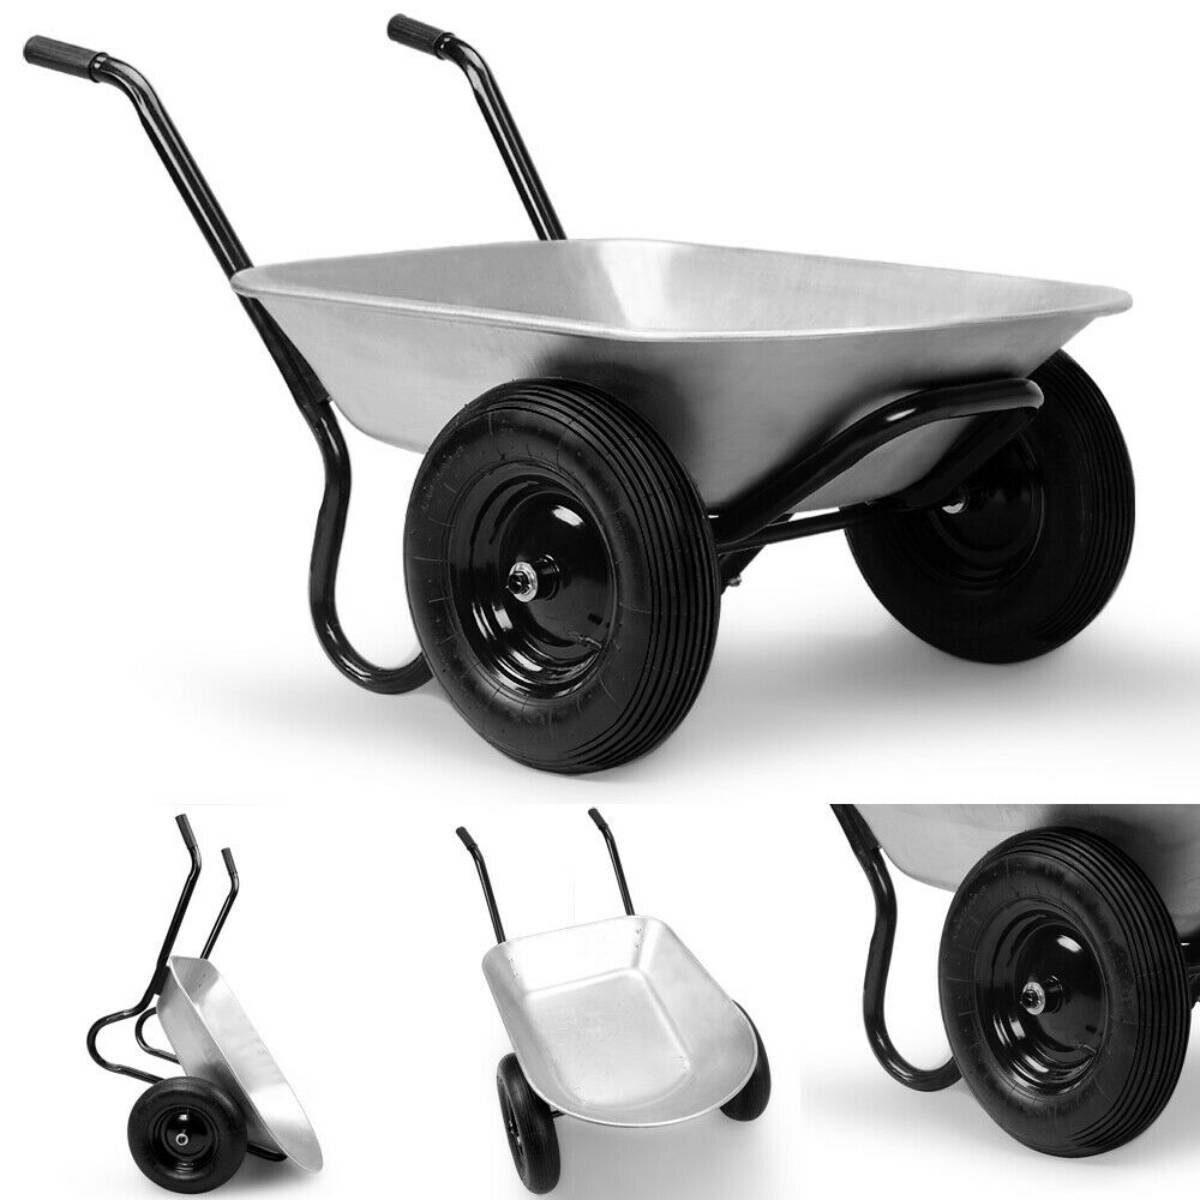 2-Tekerlekler Bahçe El Arabası 100L / 150KG Metal El Arabası Bahçe İnşaatçılar Pnömatik Lastik Ağır Hizmet Outdoor El Arabası